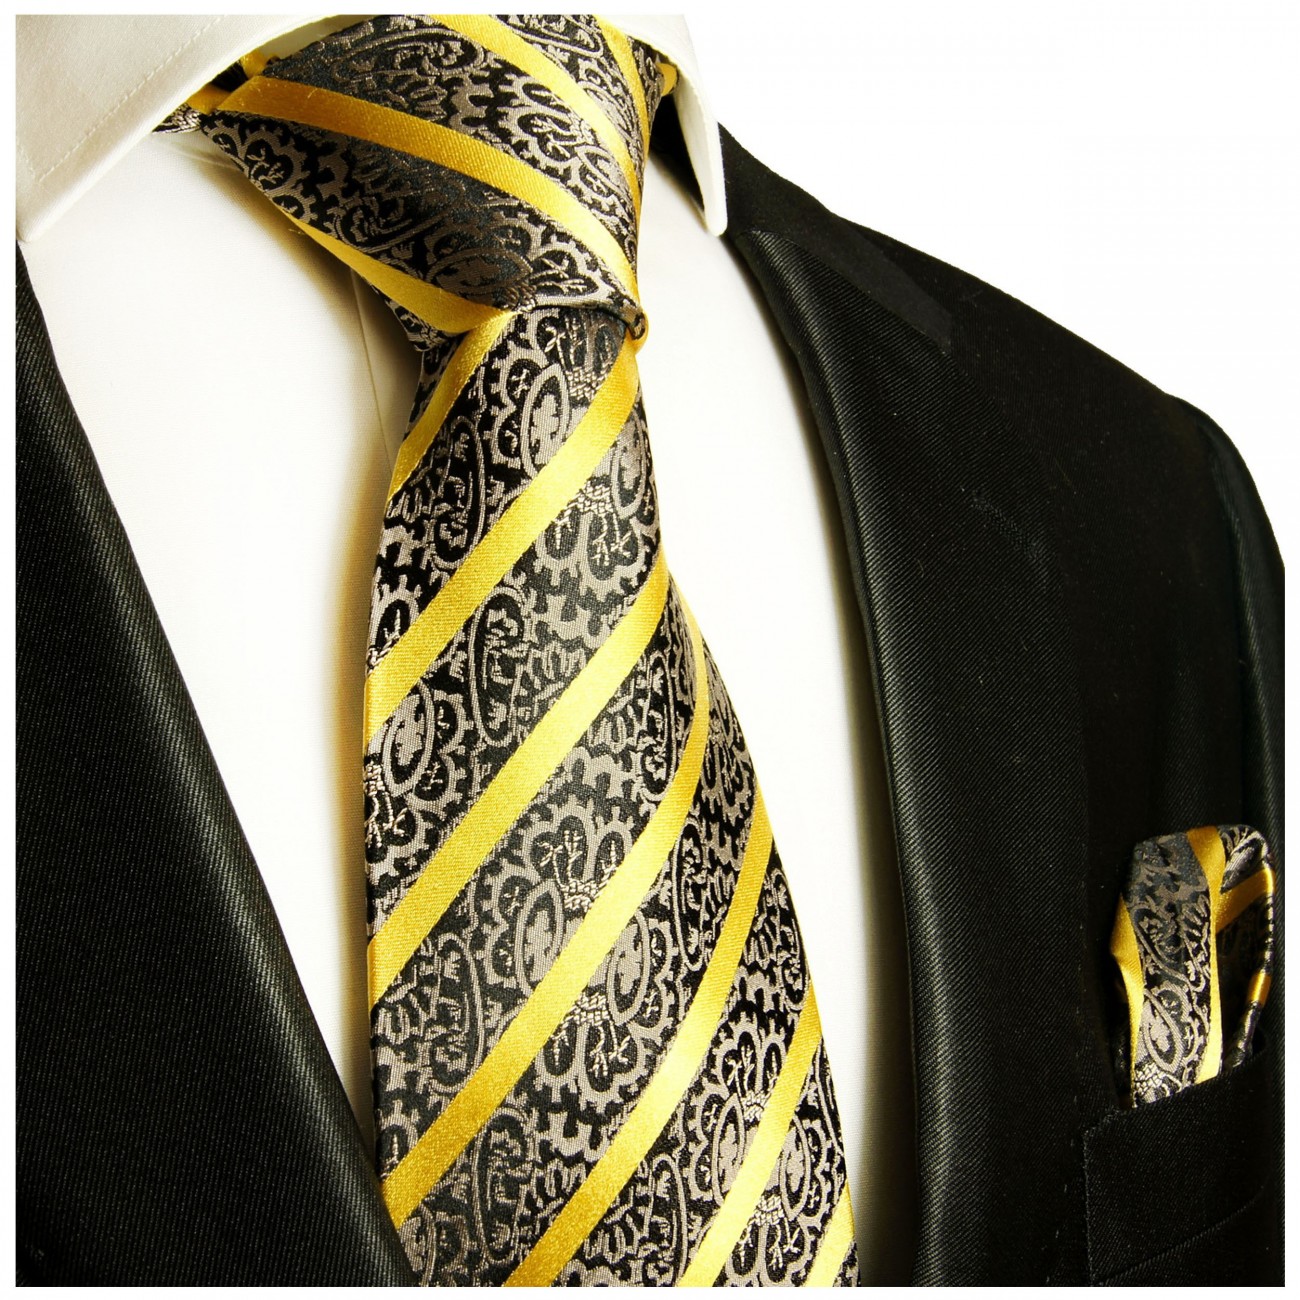 Black gold necktie XL TIE 100% SILK by Paul Malone 931 - Paul Malone Shop